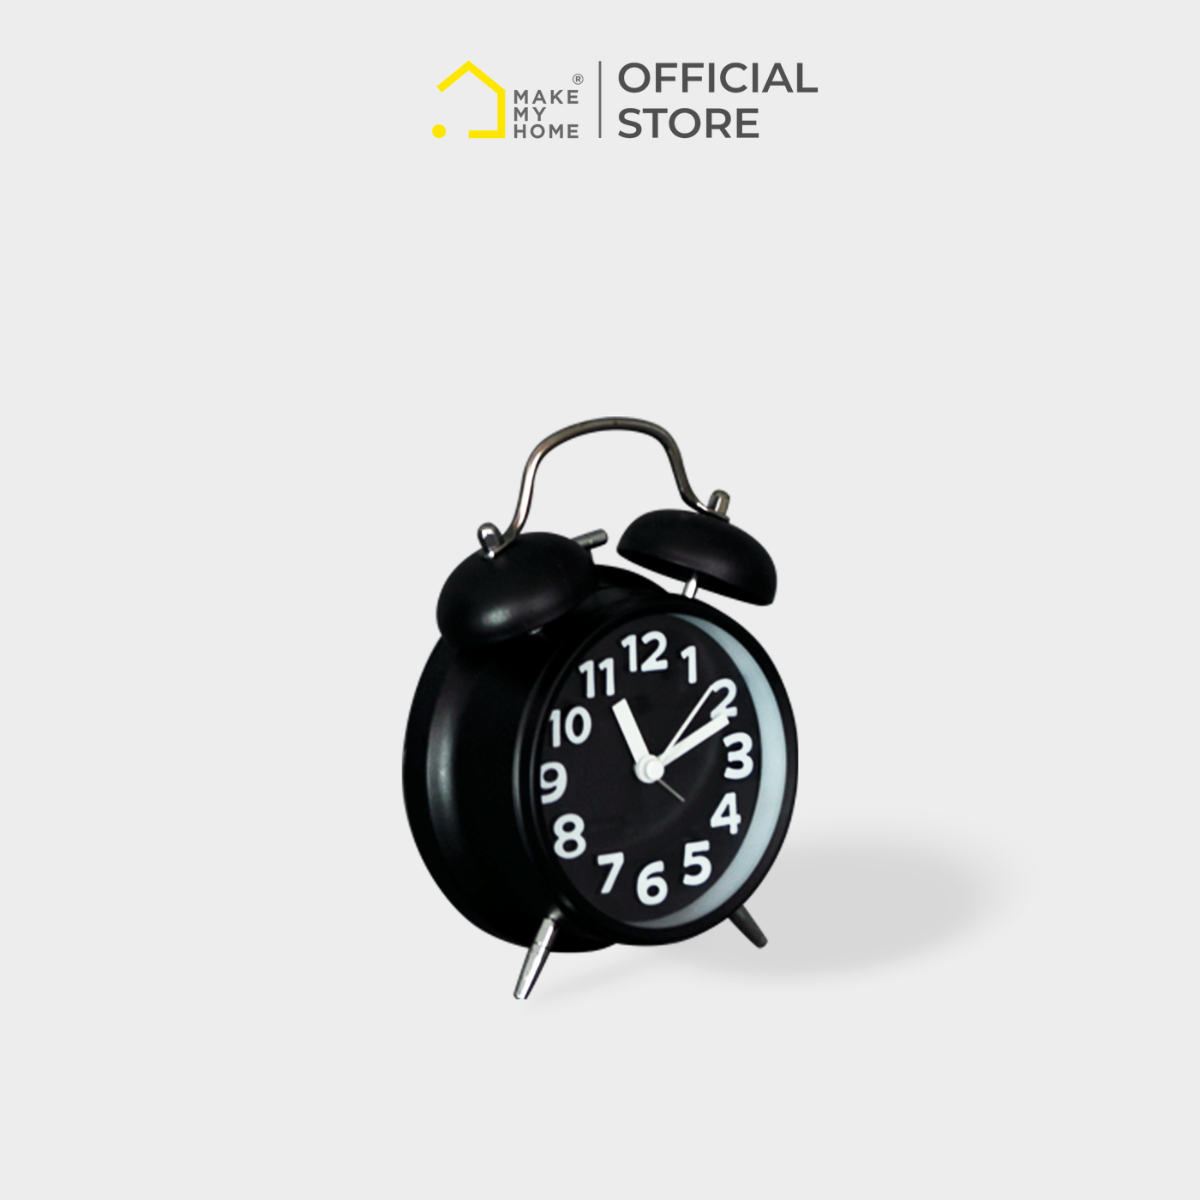 Bạn là người hay quên mất thời gian trong ngày? Đồng hồ báo thức sẽ giúp bạn luôn được nhắc nhở thời gian đúng lúc. Đồng thời, bạn cũng có thể lựa chọn cho mình những chiếc đồng hồ báo thức với thiết kế độc đáo và tinh tế để tăng độ thẩm mỹ cho căn phòng. Xem hình liên quan để lựa chọn sản phẩm phù hợp với mình nhất.